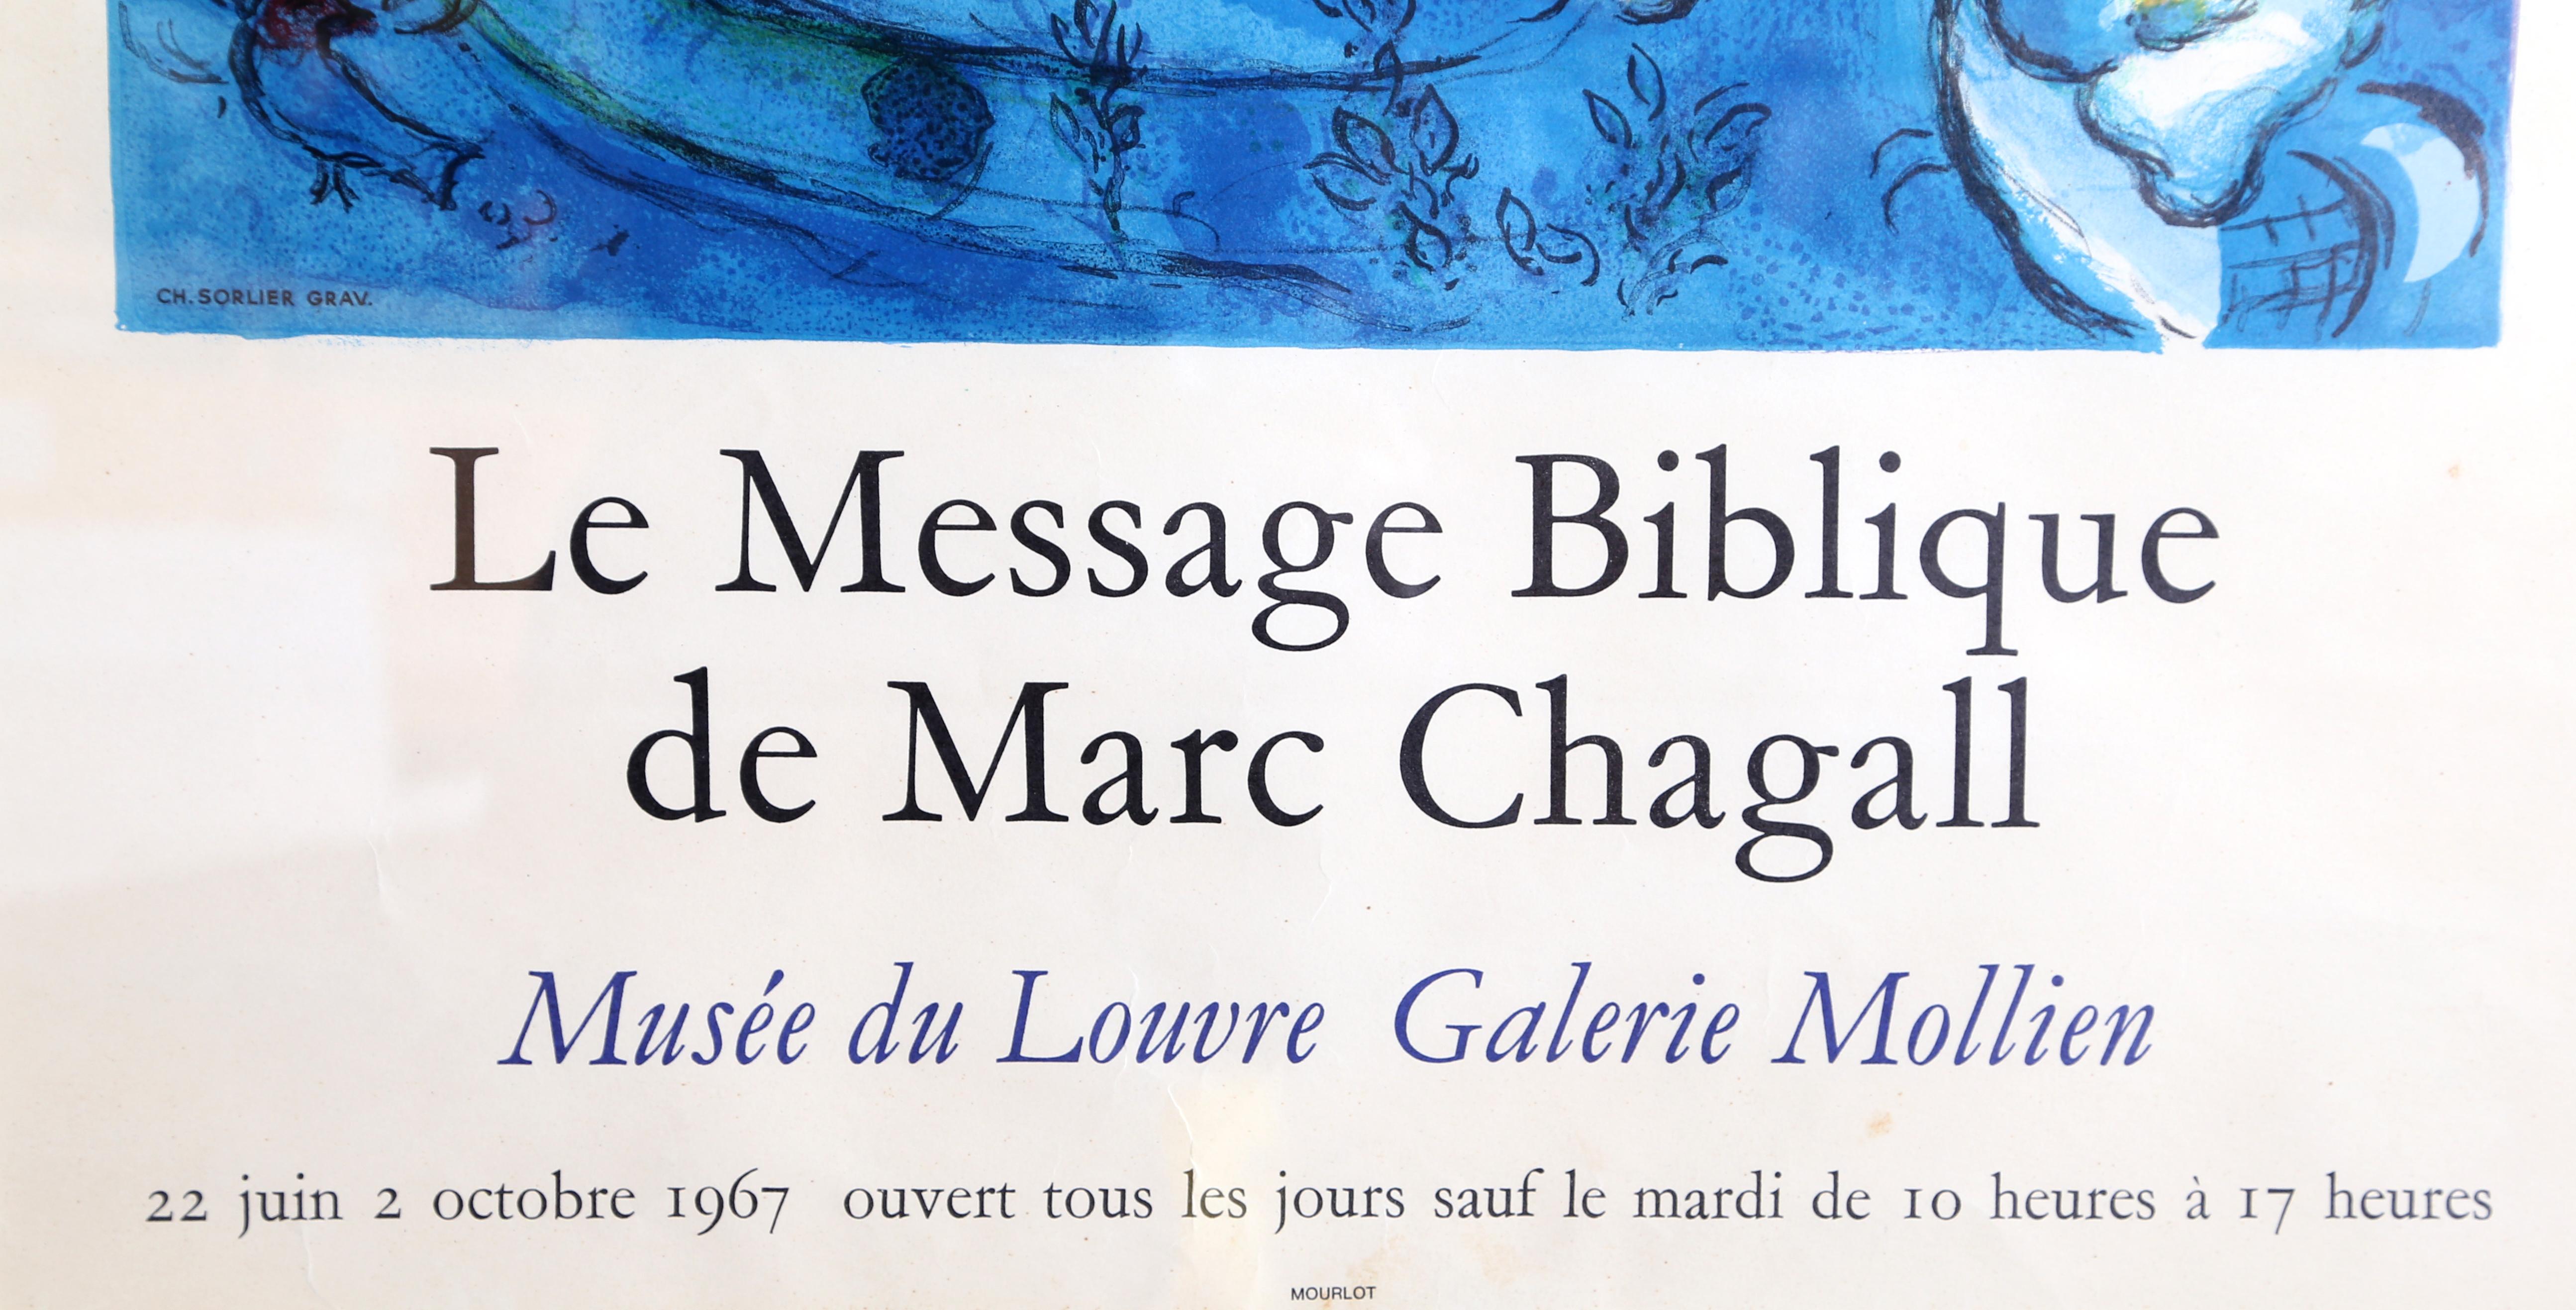 La Message Biblique - Musee du Louvre Galerie Mollien - Print by Marc Chagall